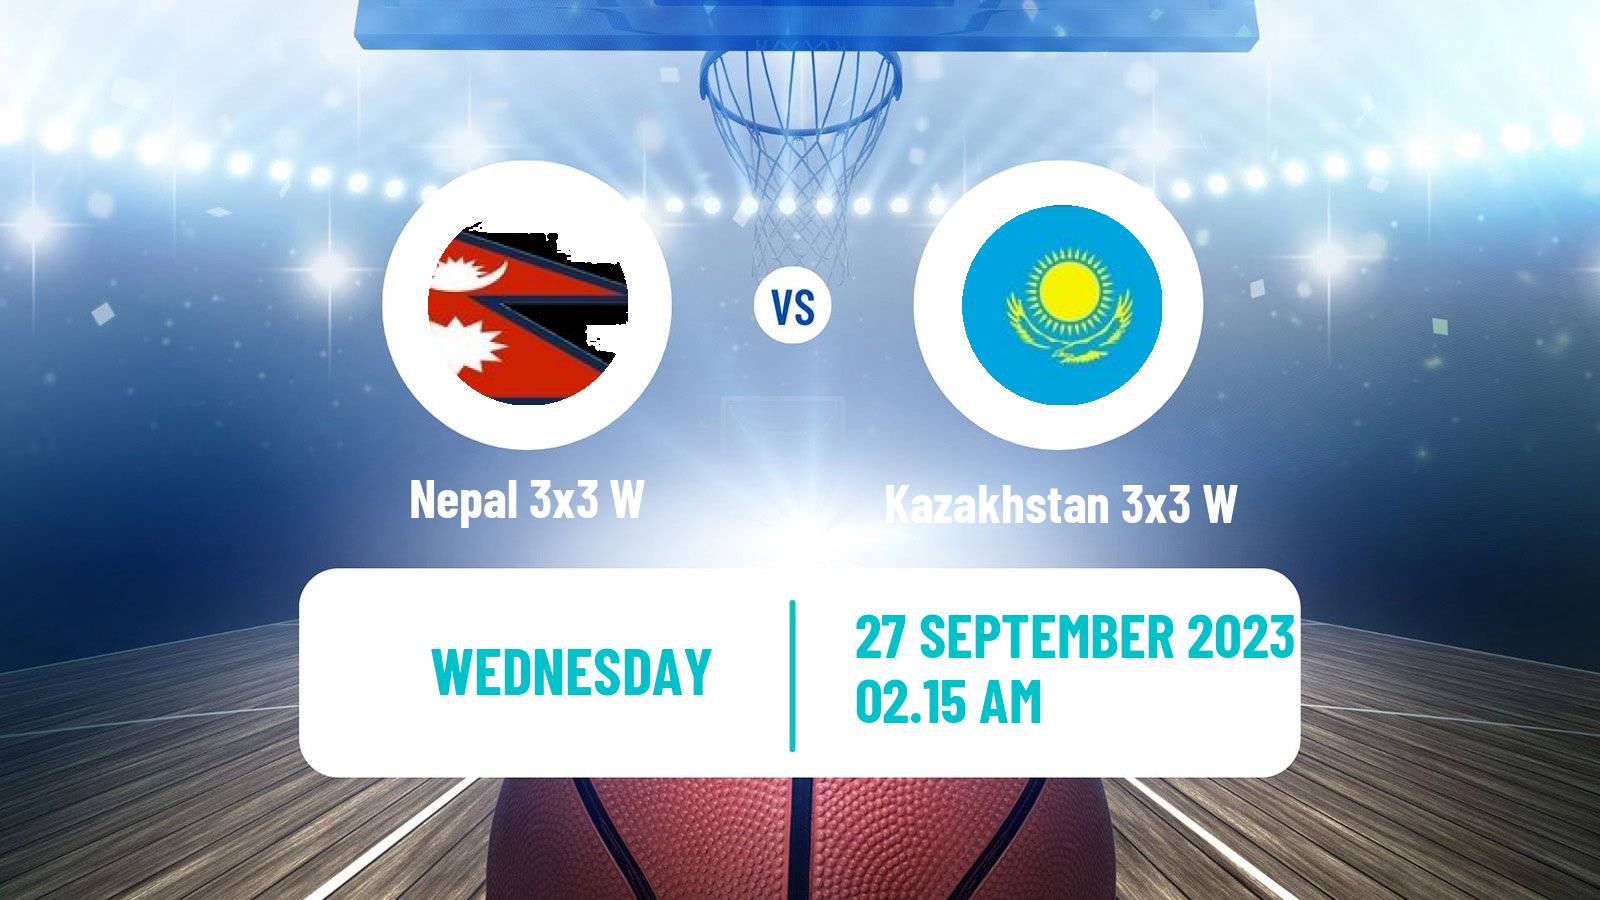 Basketball Asian Games Basketball 3x3 Women Nepal 3x3 W - Kazakhstan 3x3 W